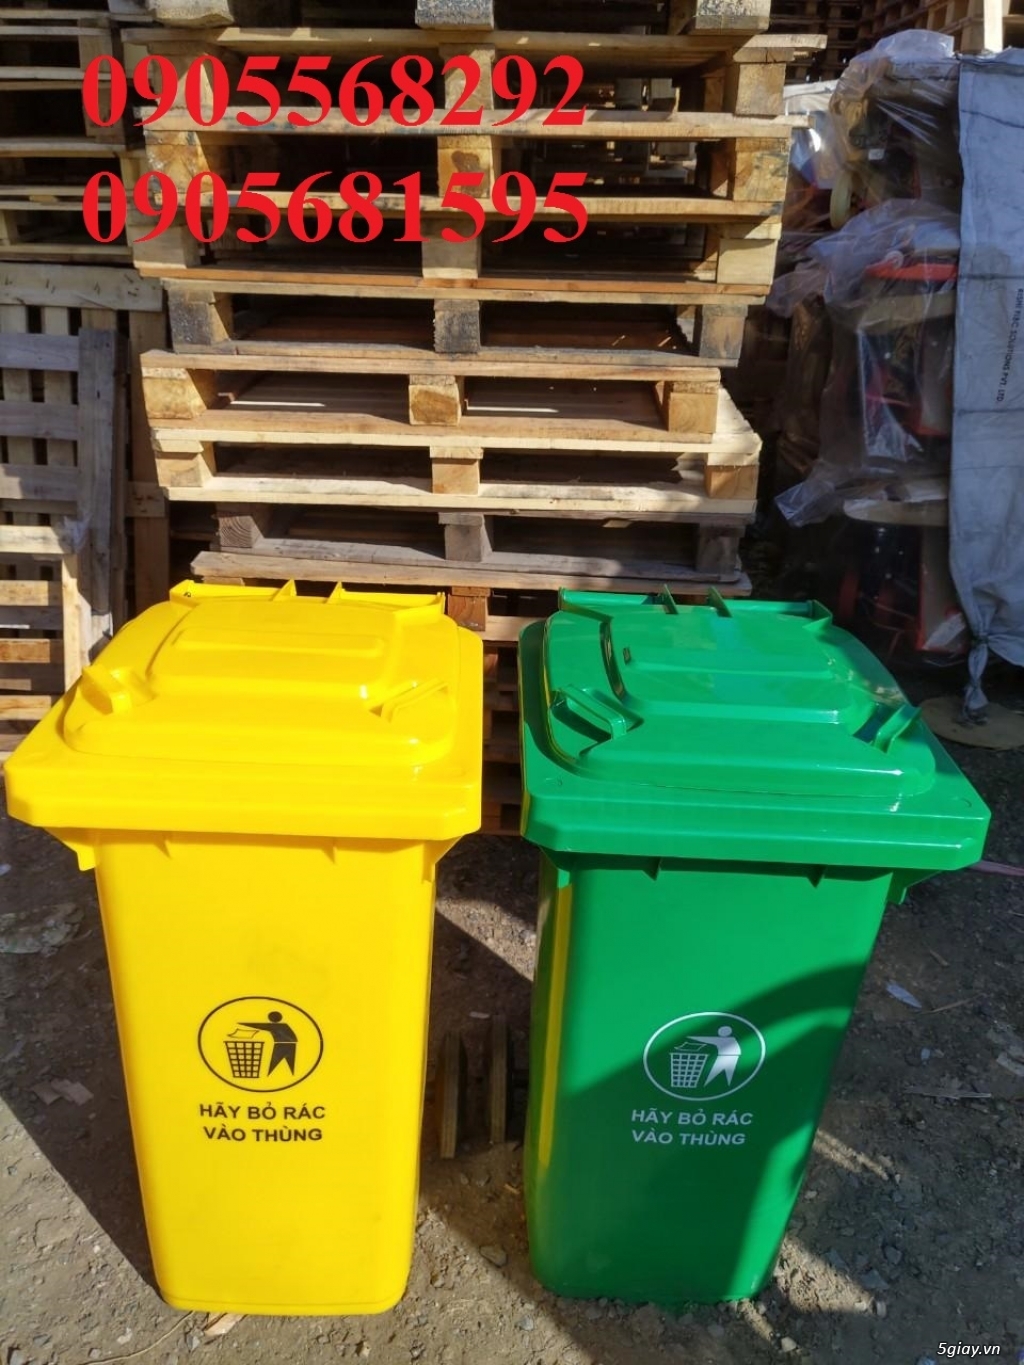 cung cấp thùng rác lớn nhất miền trung 0905568292-0905681595 - 1